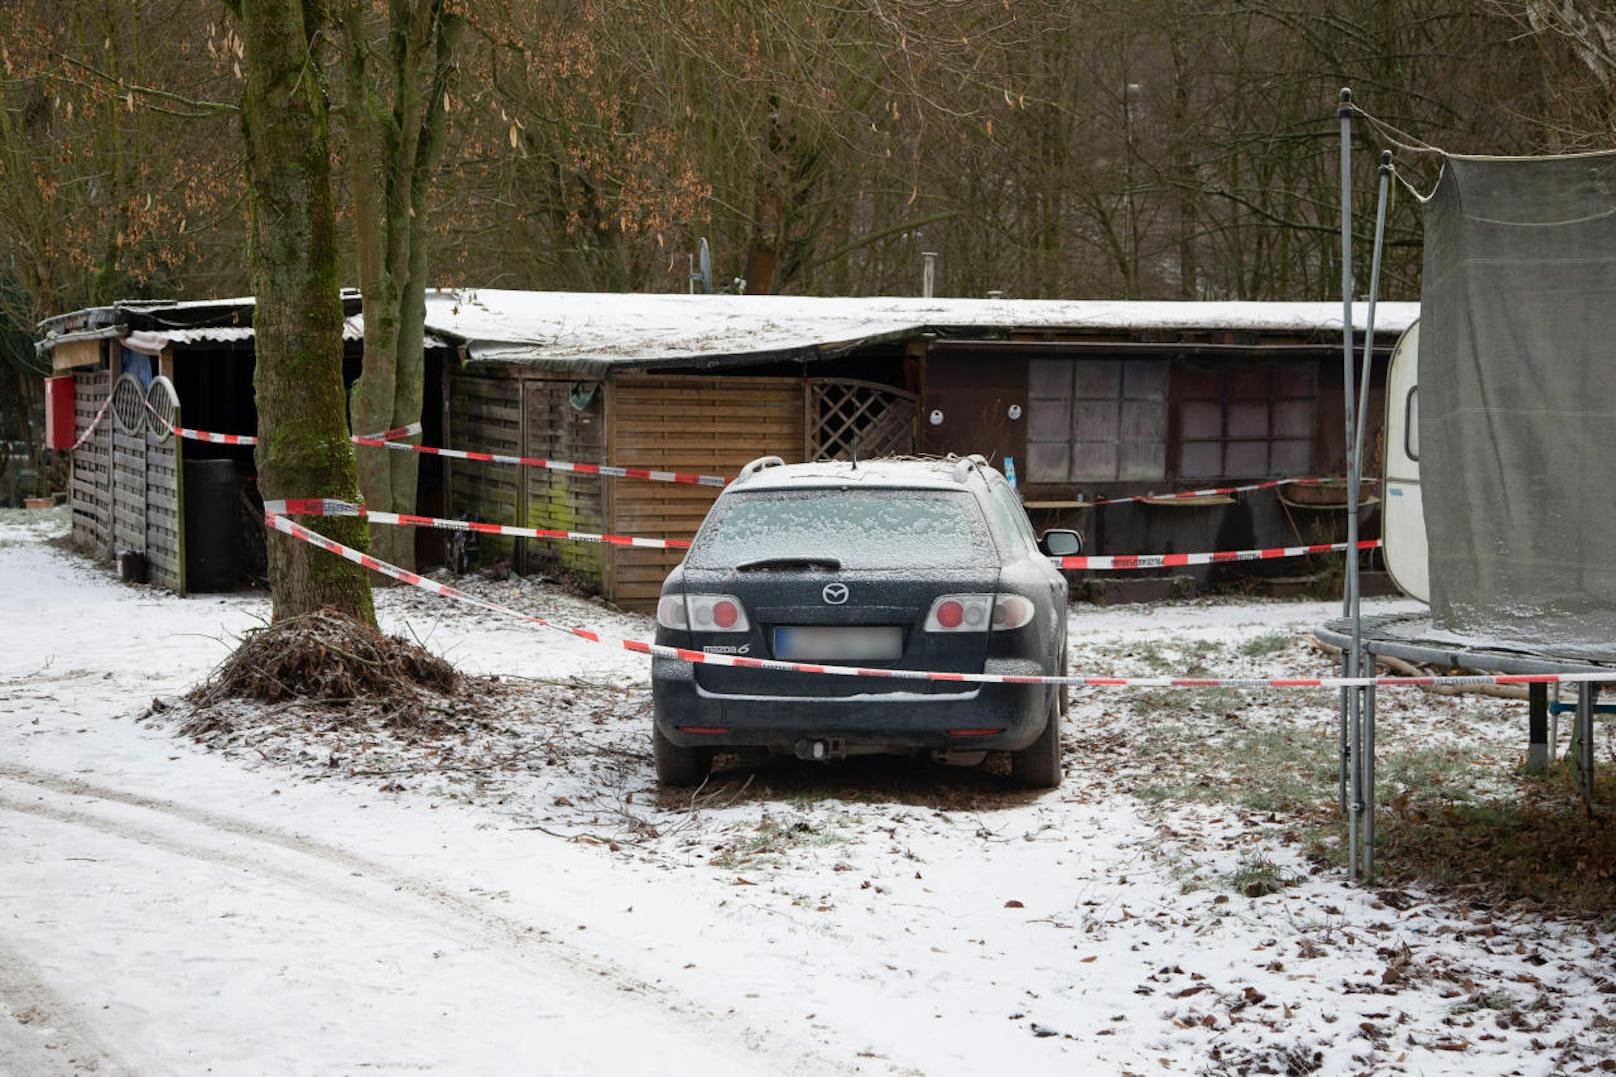 Drei Männer sollen auf dem Campingplatz in Lügde im nordrhein-westfälischen Kreis Lippe 23 Kinder sexuell missbraucht und kinderpornografisches Material hergestellt haben.